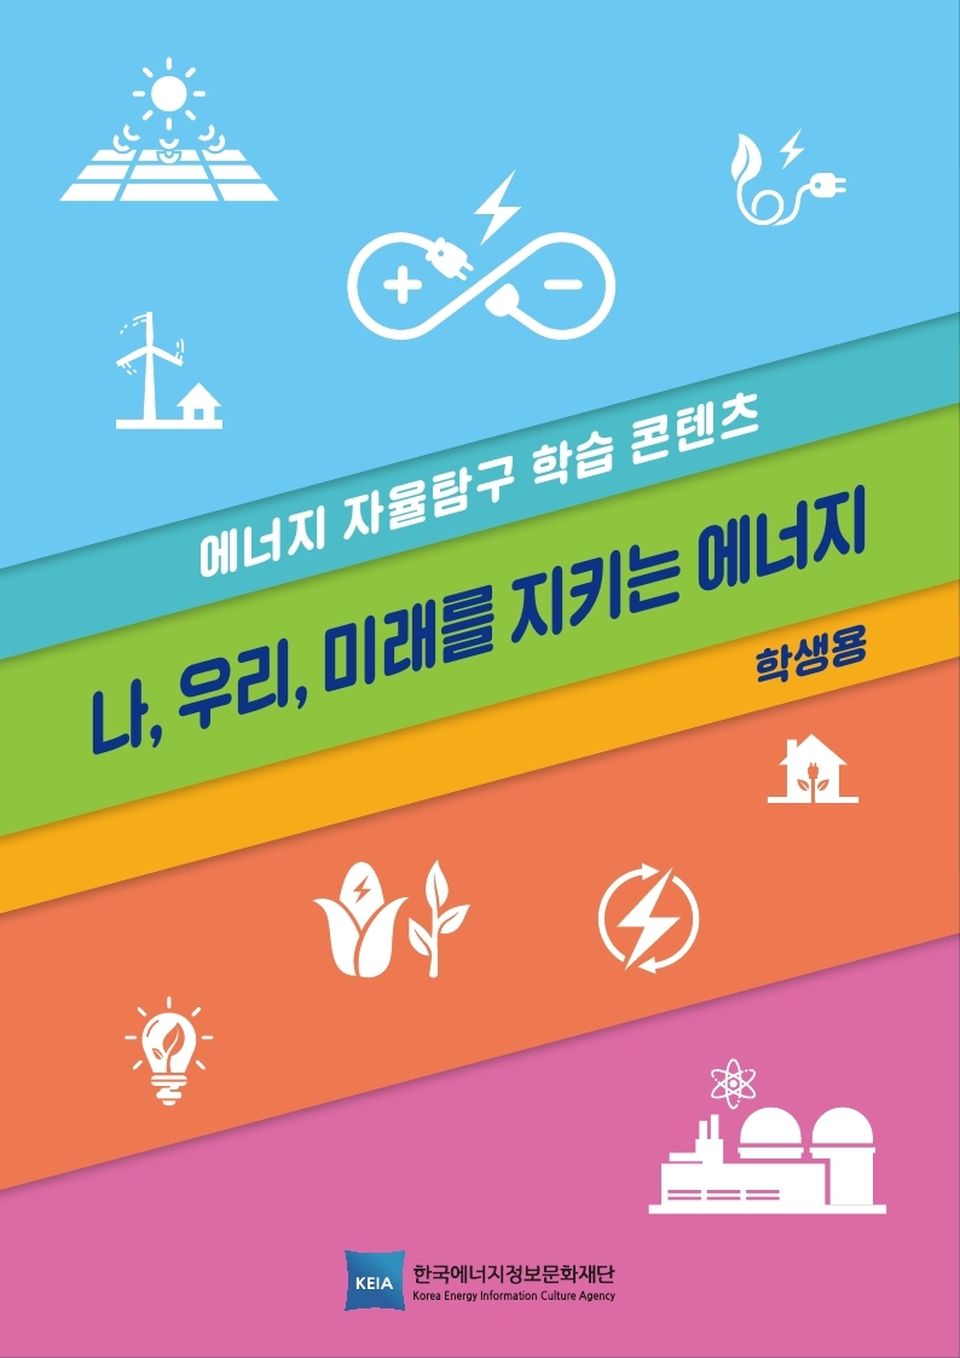 한국에너지정보문화재단은 초·중학생을 대상으로 에너지안보와 탄소중립을 이해하기 위해 필요한 ‘에너지 자율탐구 교재’를 제작·무료 배포한다. 사진은 ‘에너지 자율탐구 교재’ 표지.